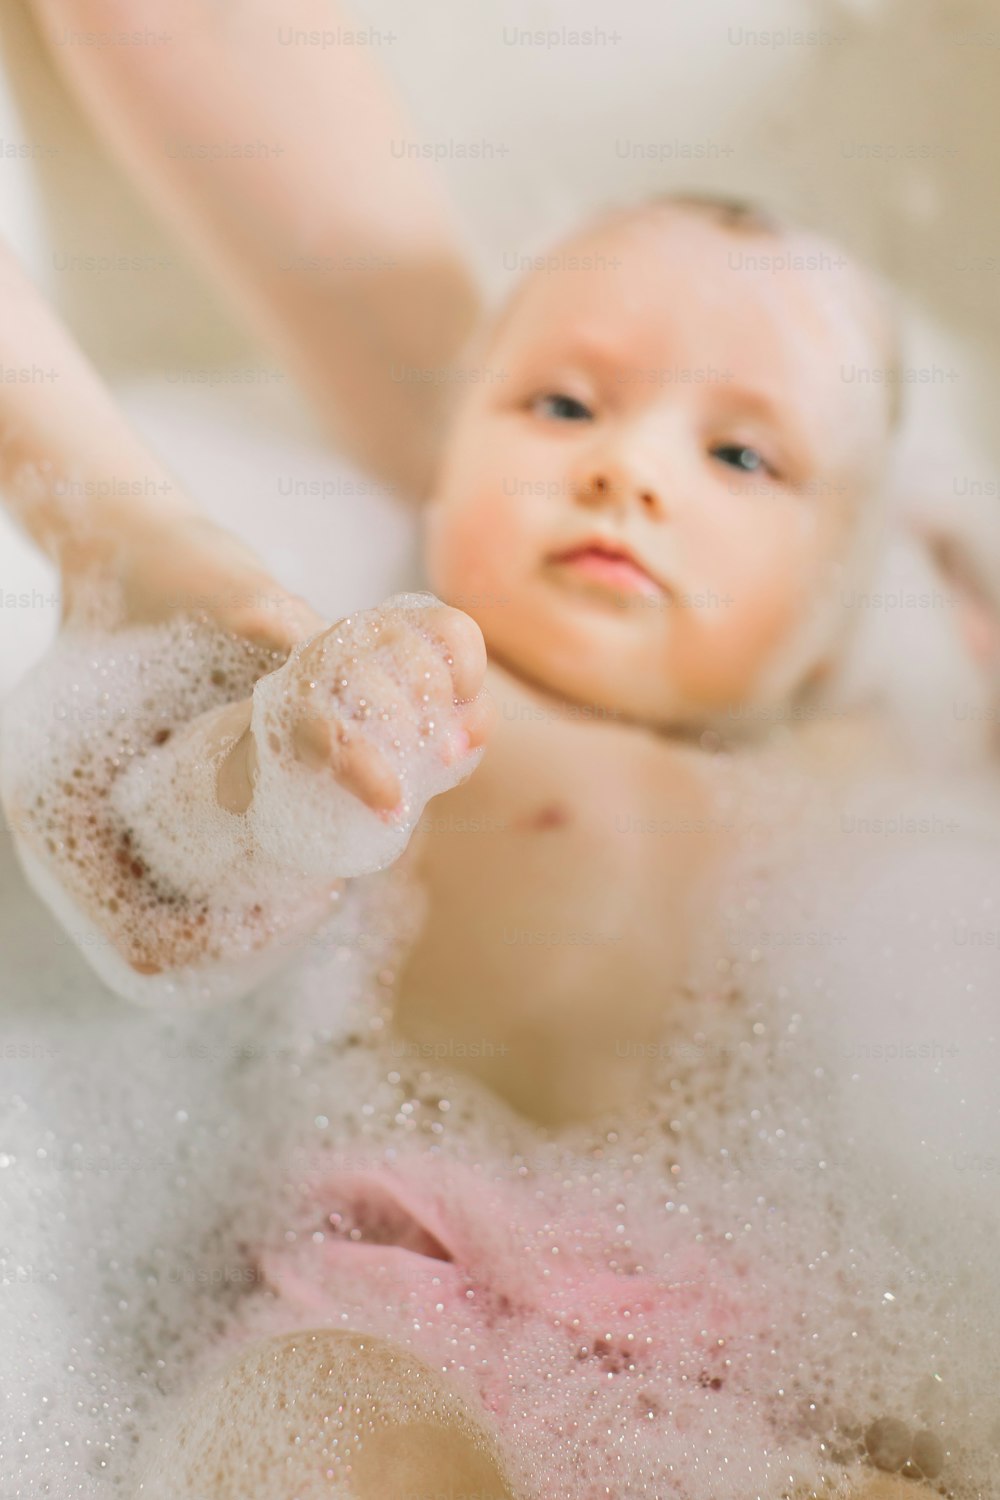 행복한 작은 아기가 화장실에서 수영하고 있습니다. 거품이 있는 욕조에서 목욕하는 아기의 초상화